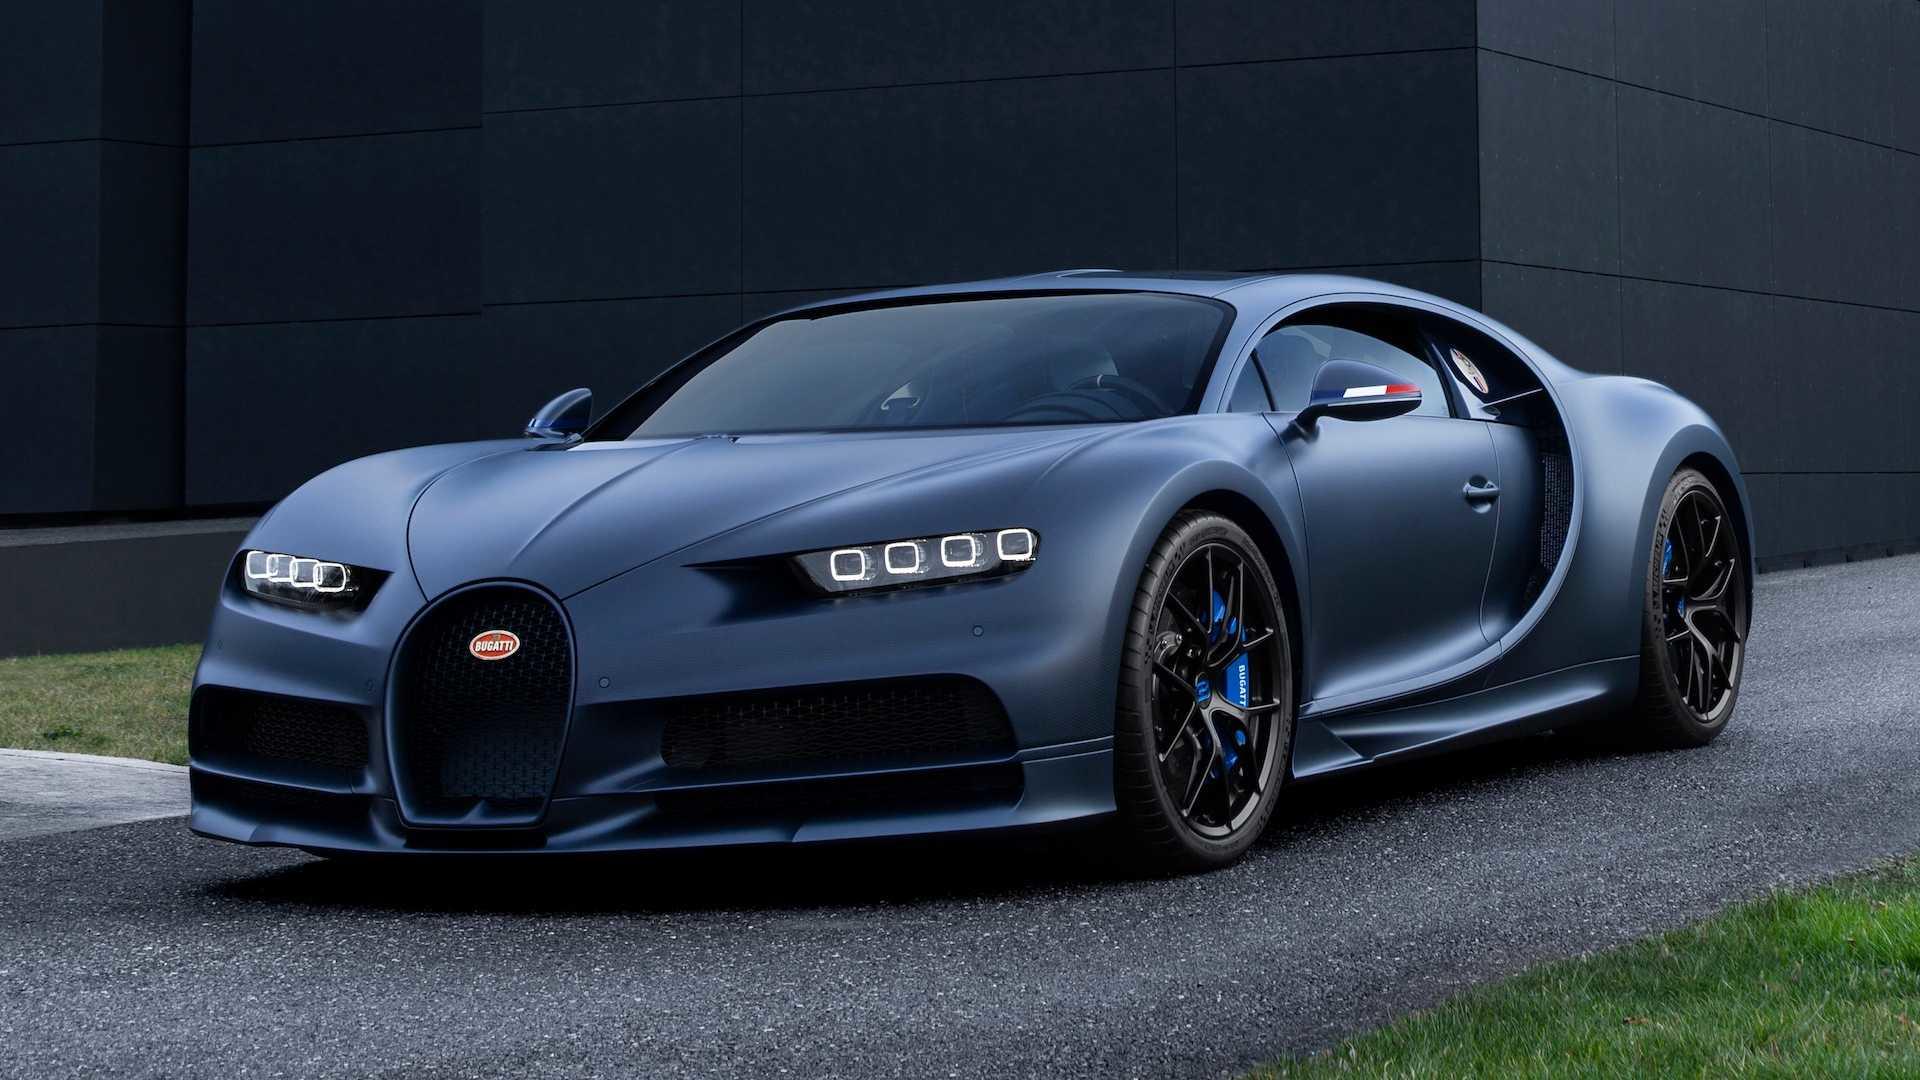 Chcete vidět, co vše je zvláštní na Bugatti Chiron? Podívejte se na tohle video